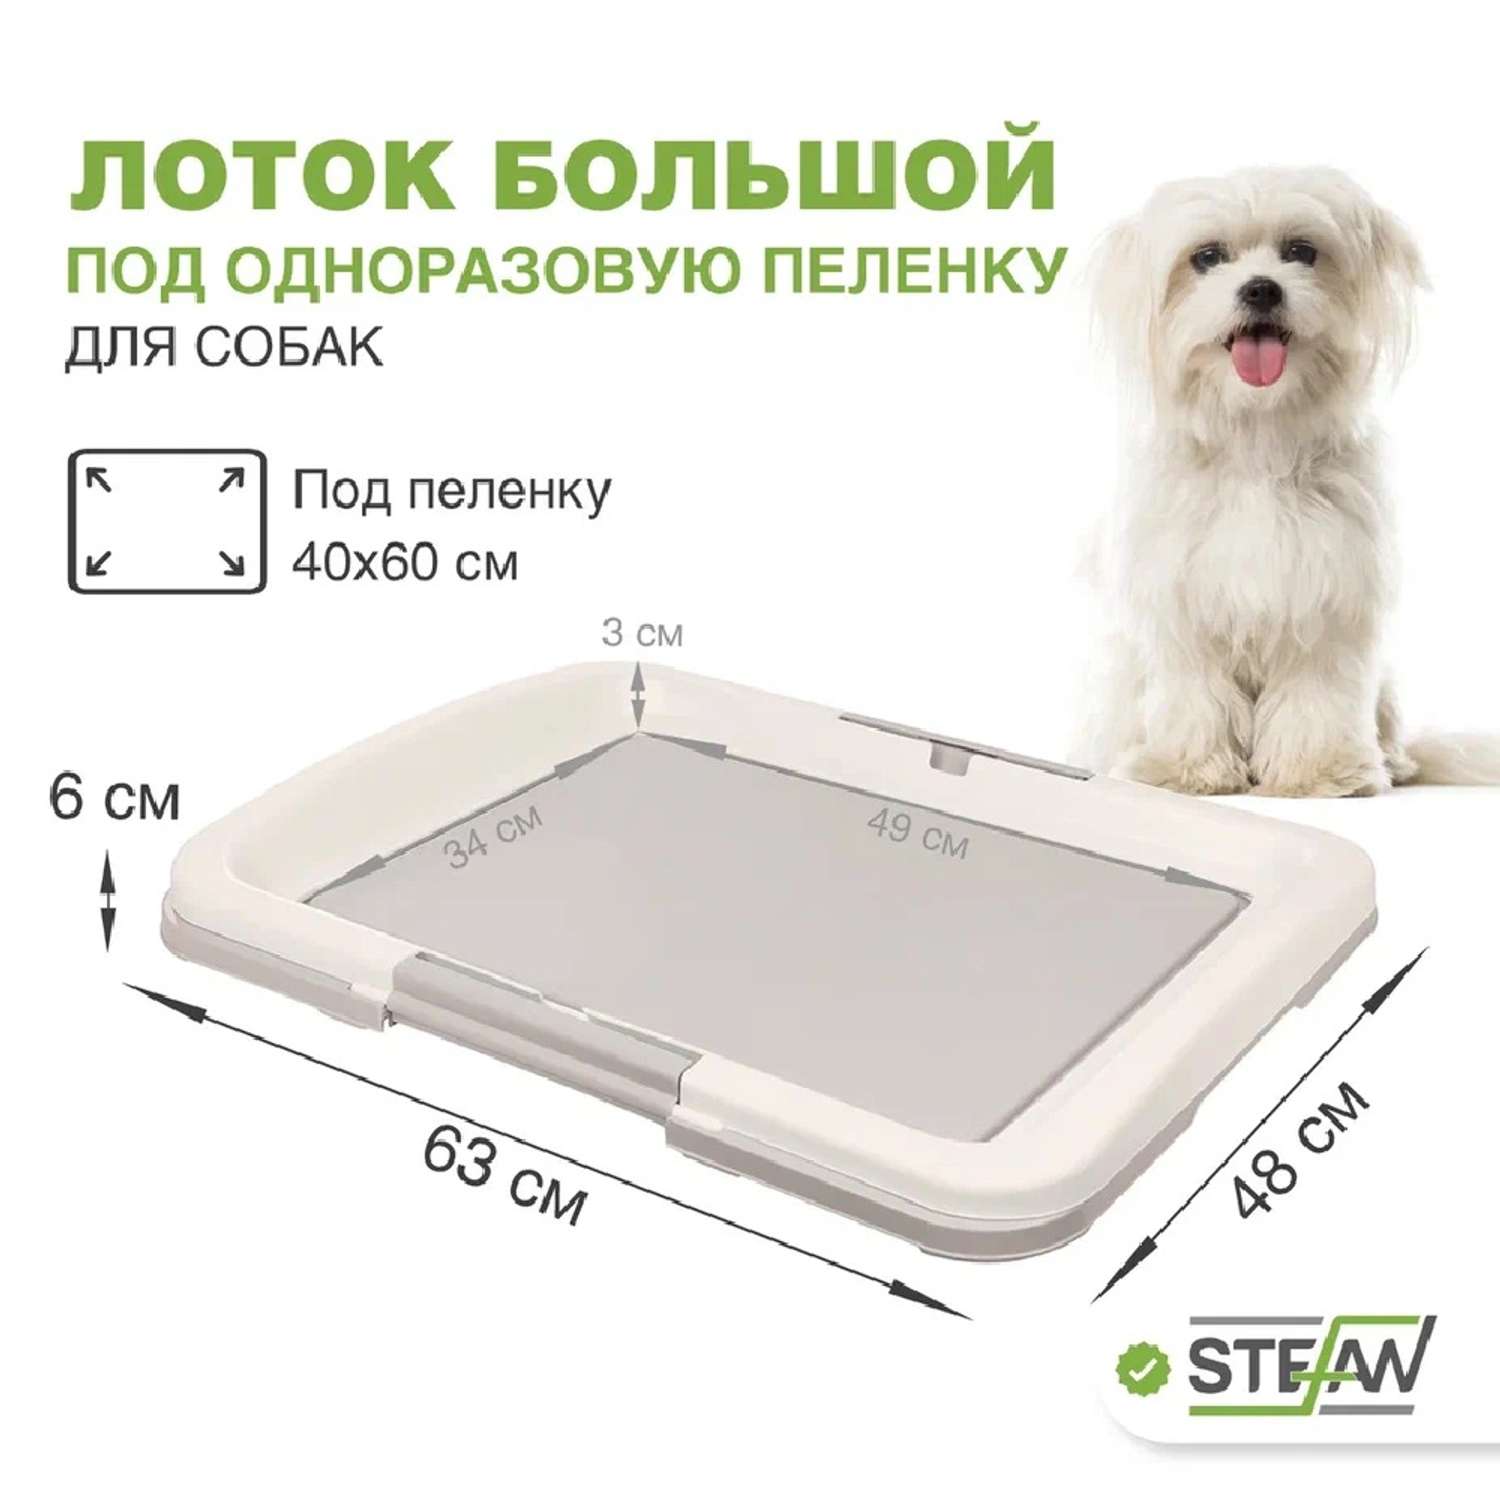 Туалет лоток для собак Stefan под одноразовую пеленку большой L 63x49х6 см серый - фото 1